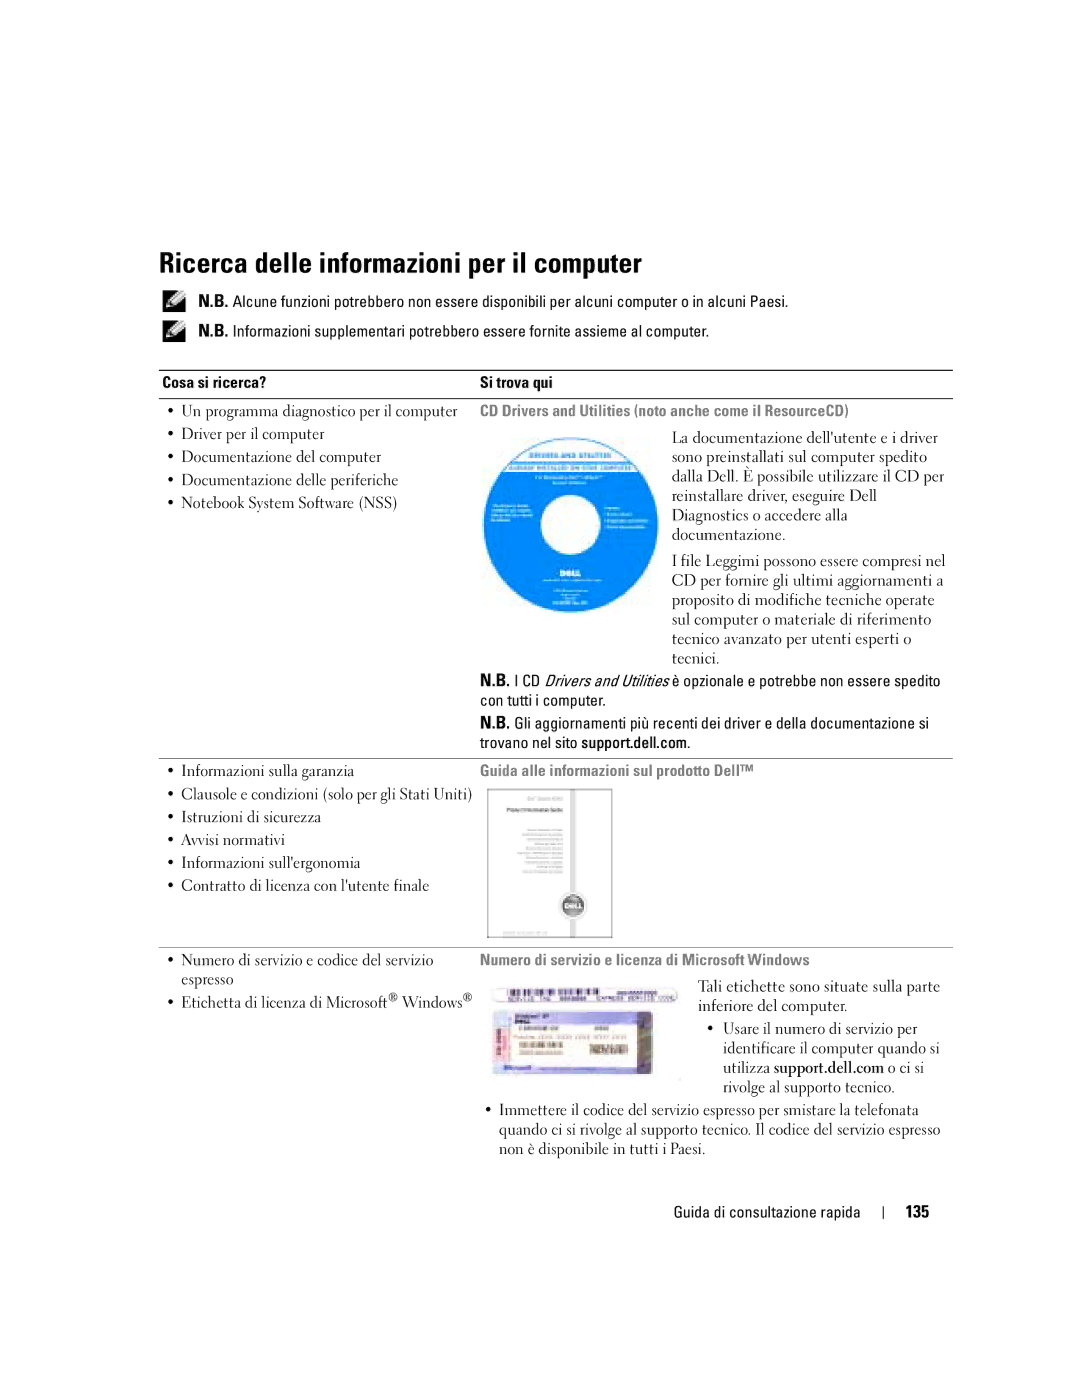 Dell M70 Mobile manual Ricerca delle informazioni per il computer, 135, Informazioni sulla garanzia 